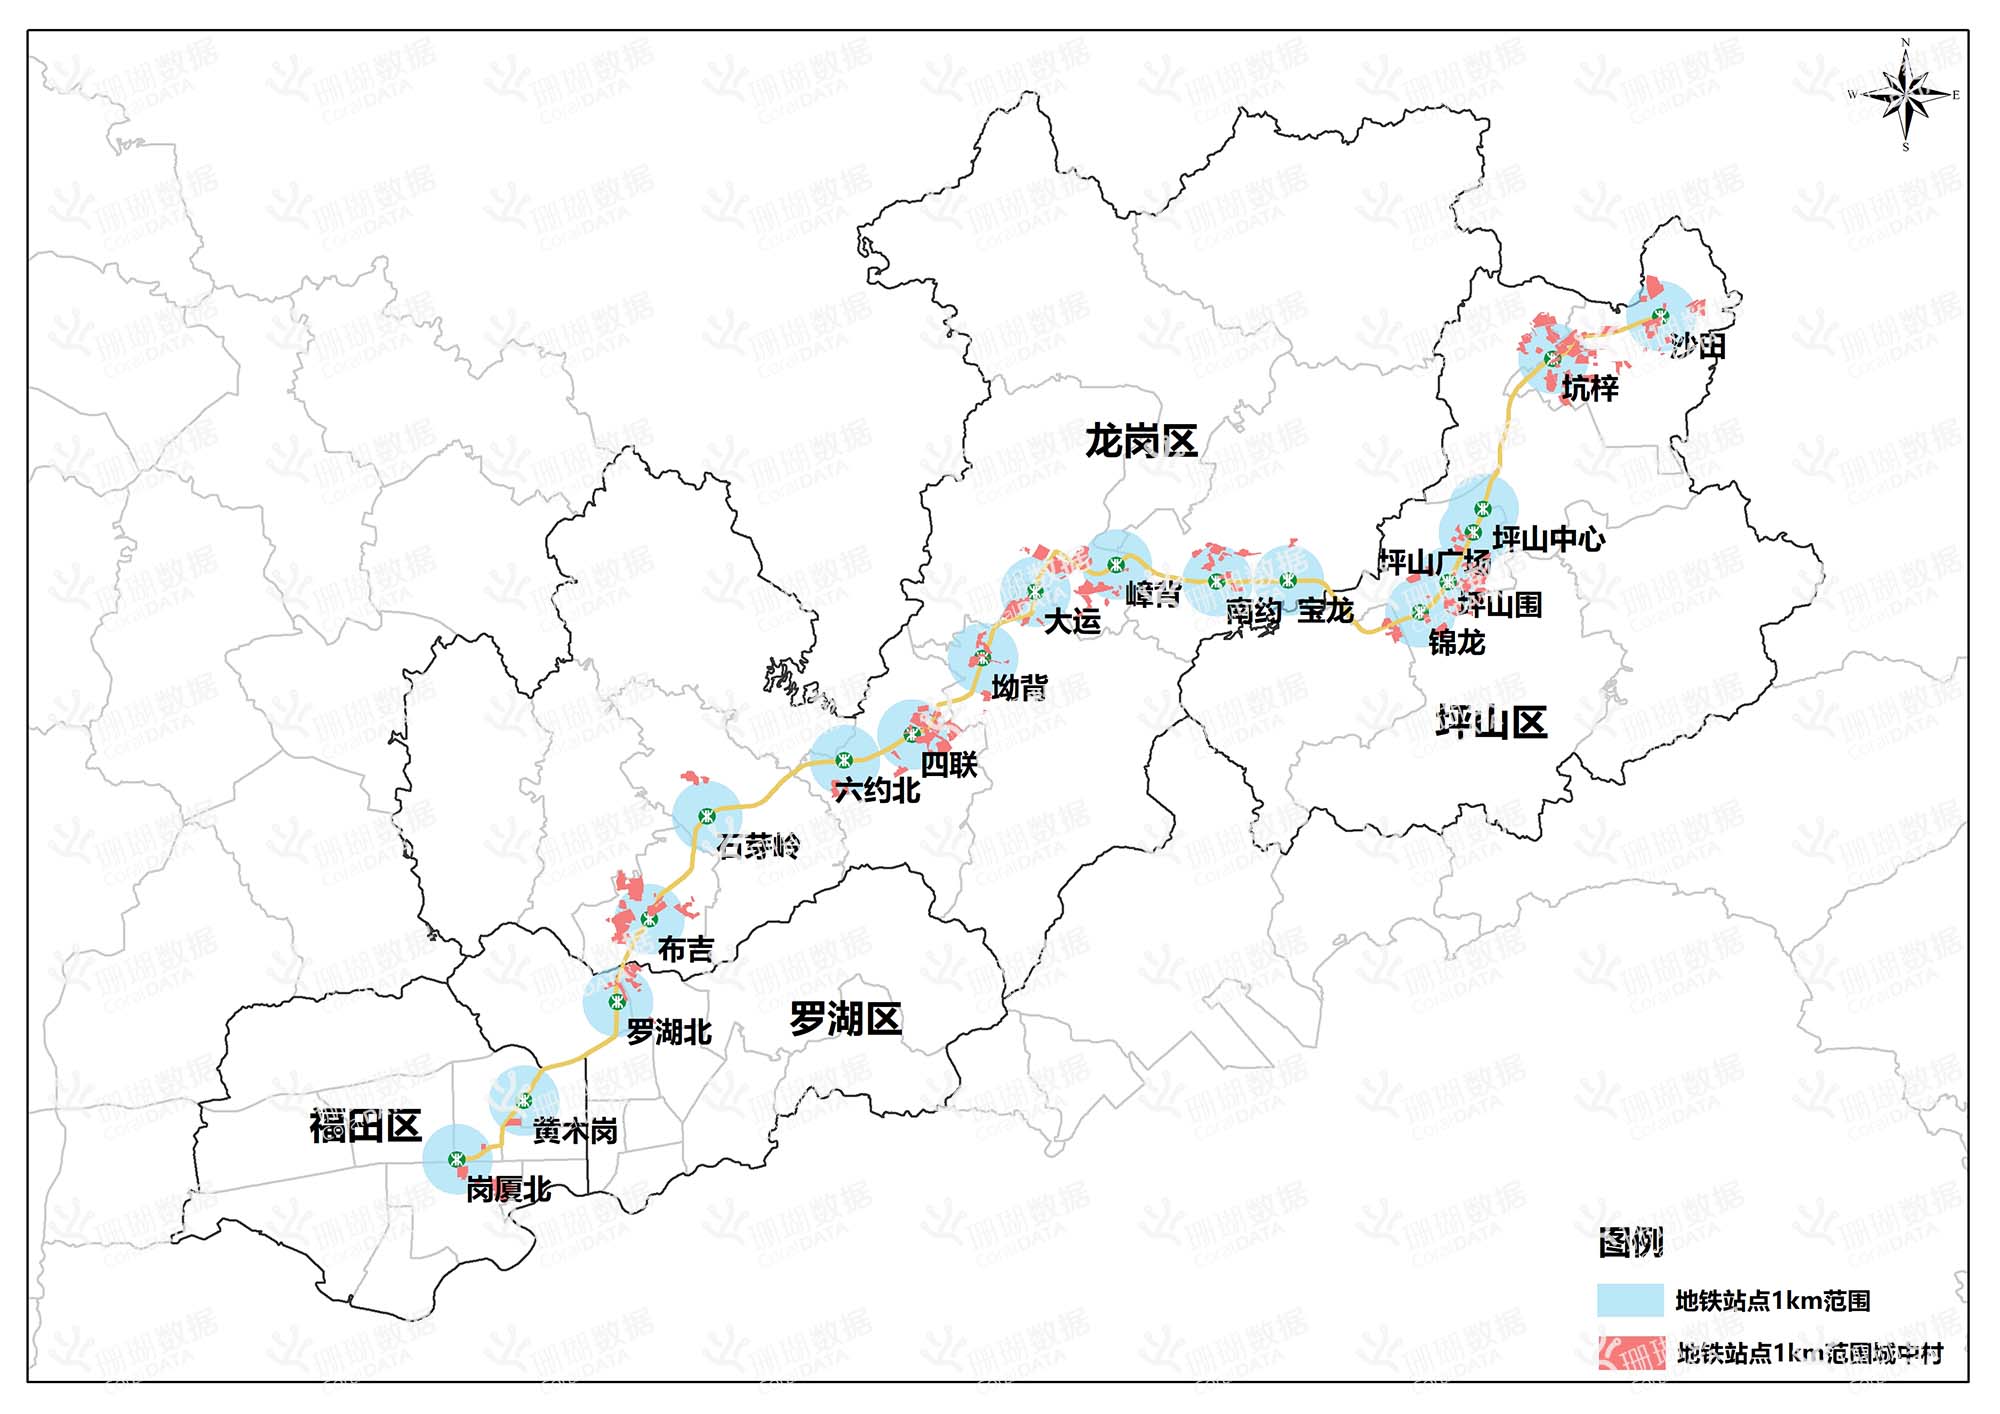 深圳地铁14号线各站点1km范围内城中村分布情况